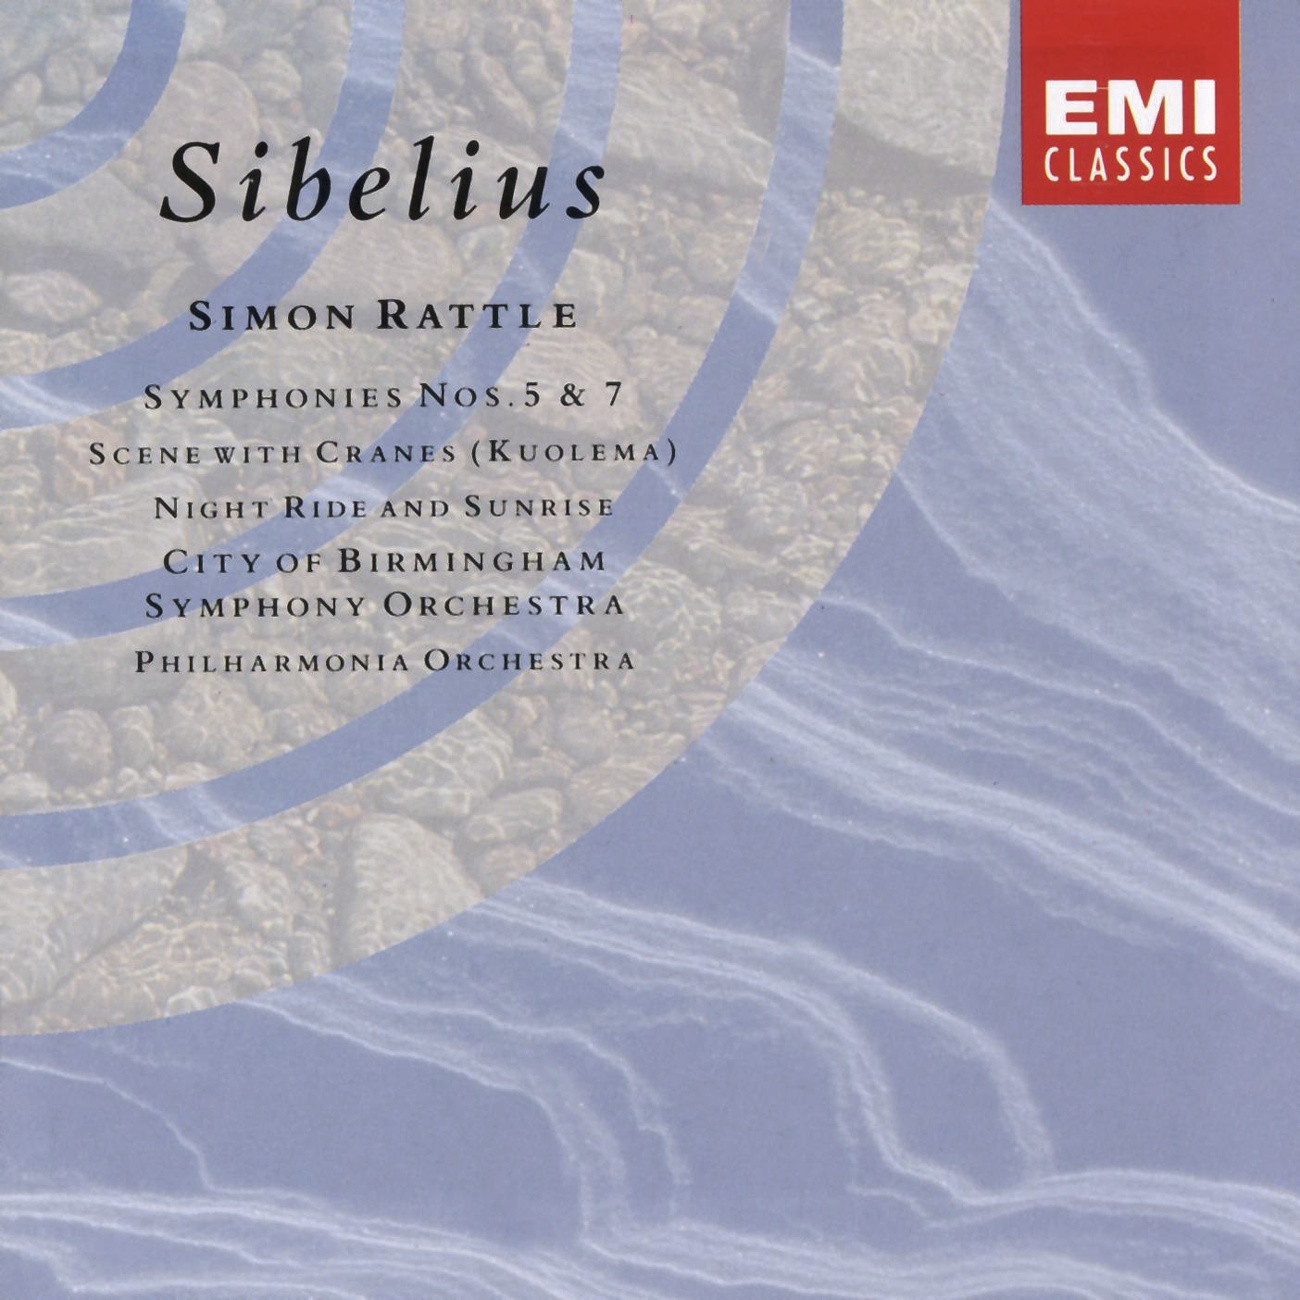 Sibelius: Symphony No. 7 in C, Op. 105: Allegro molto moderato